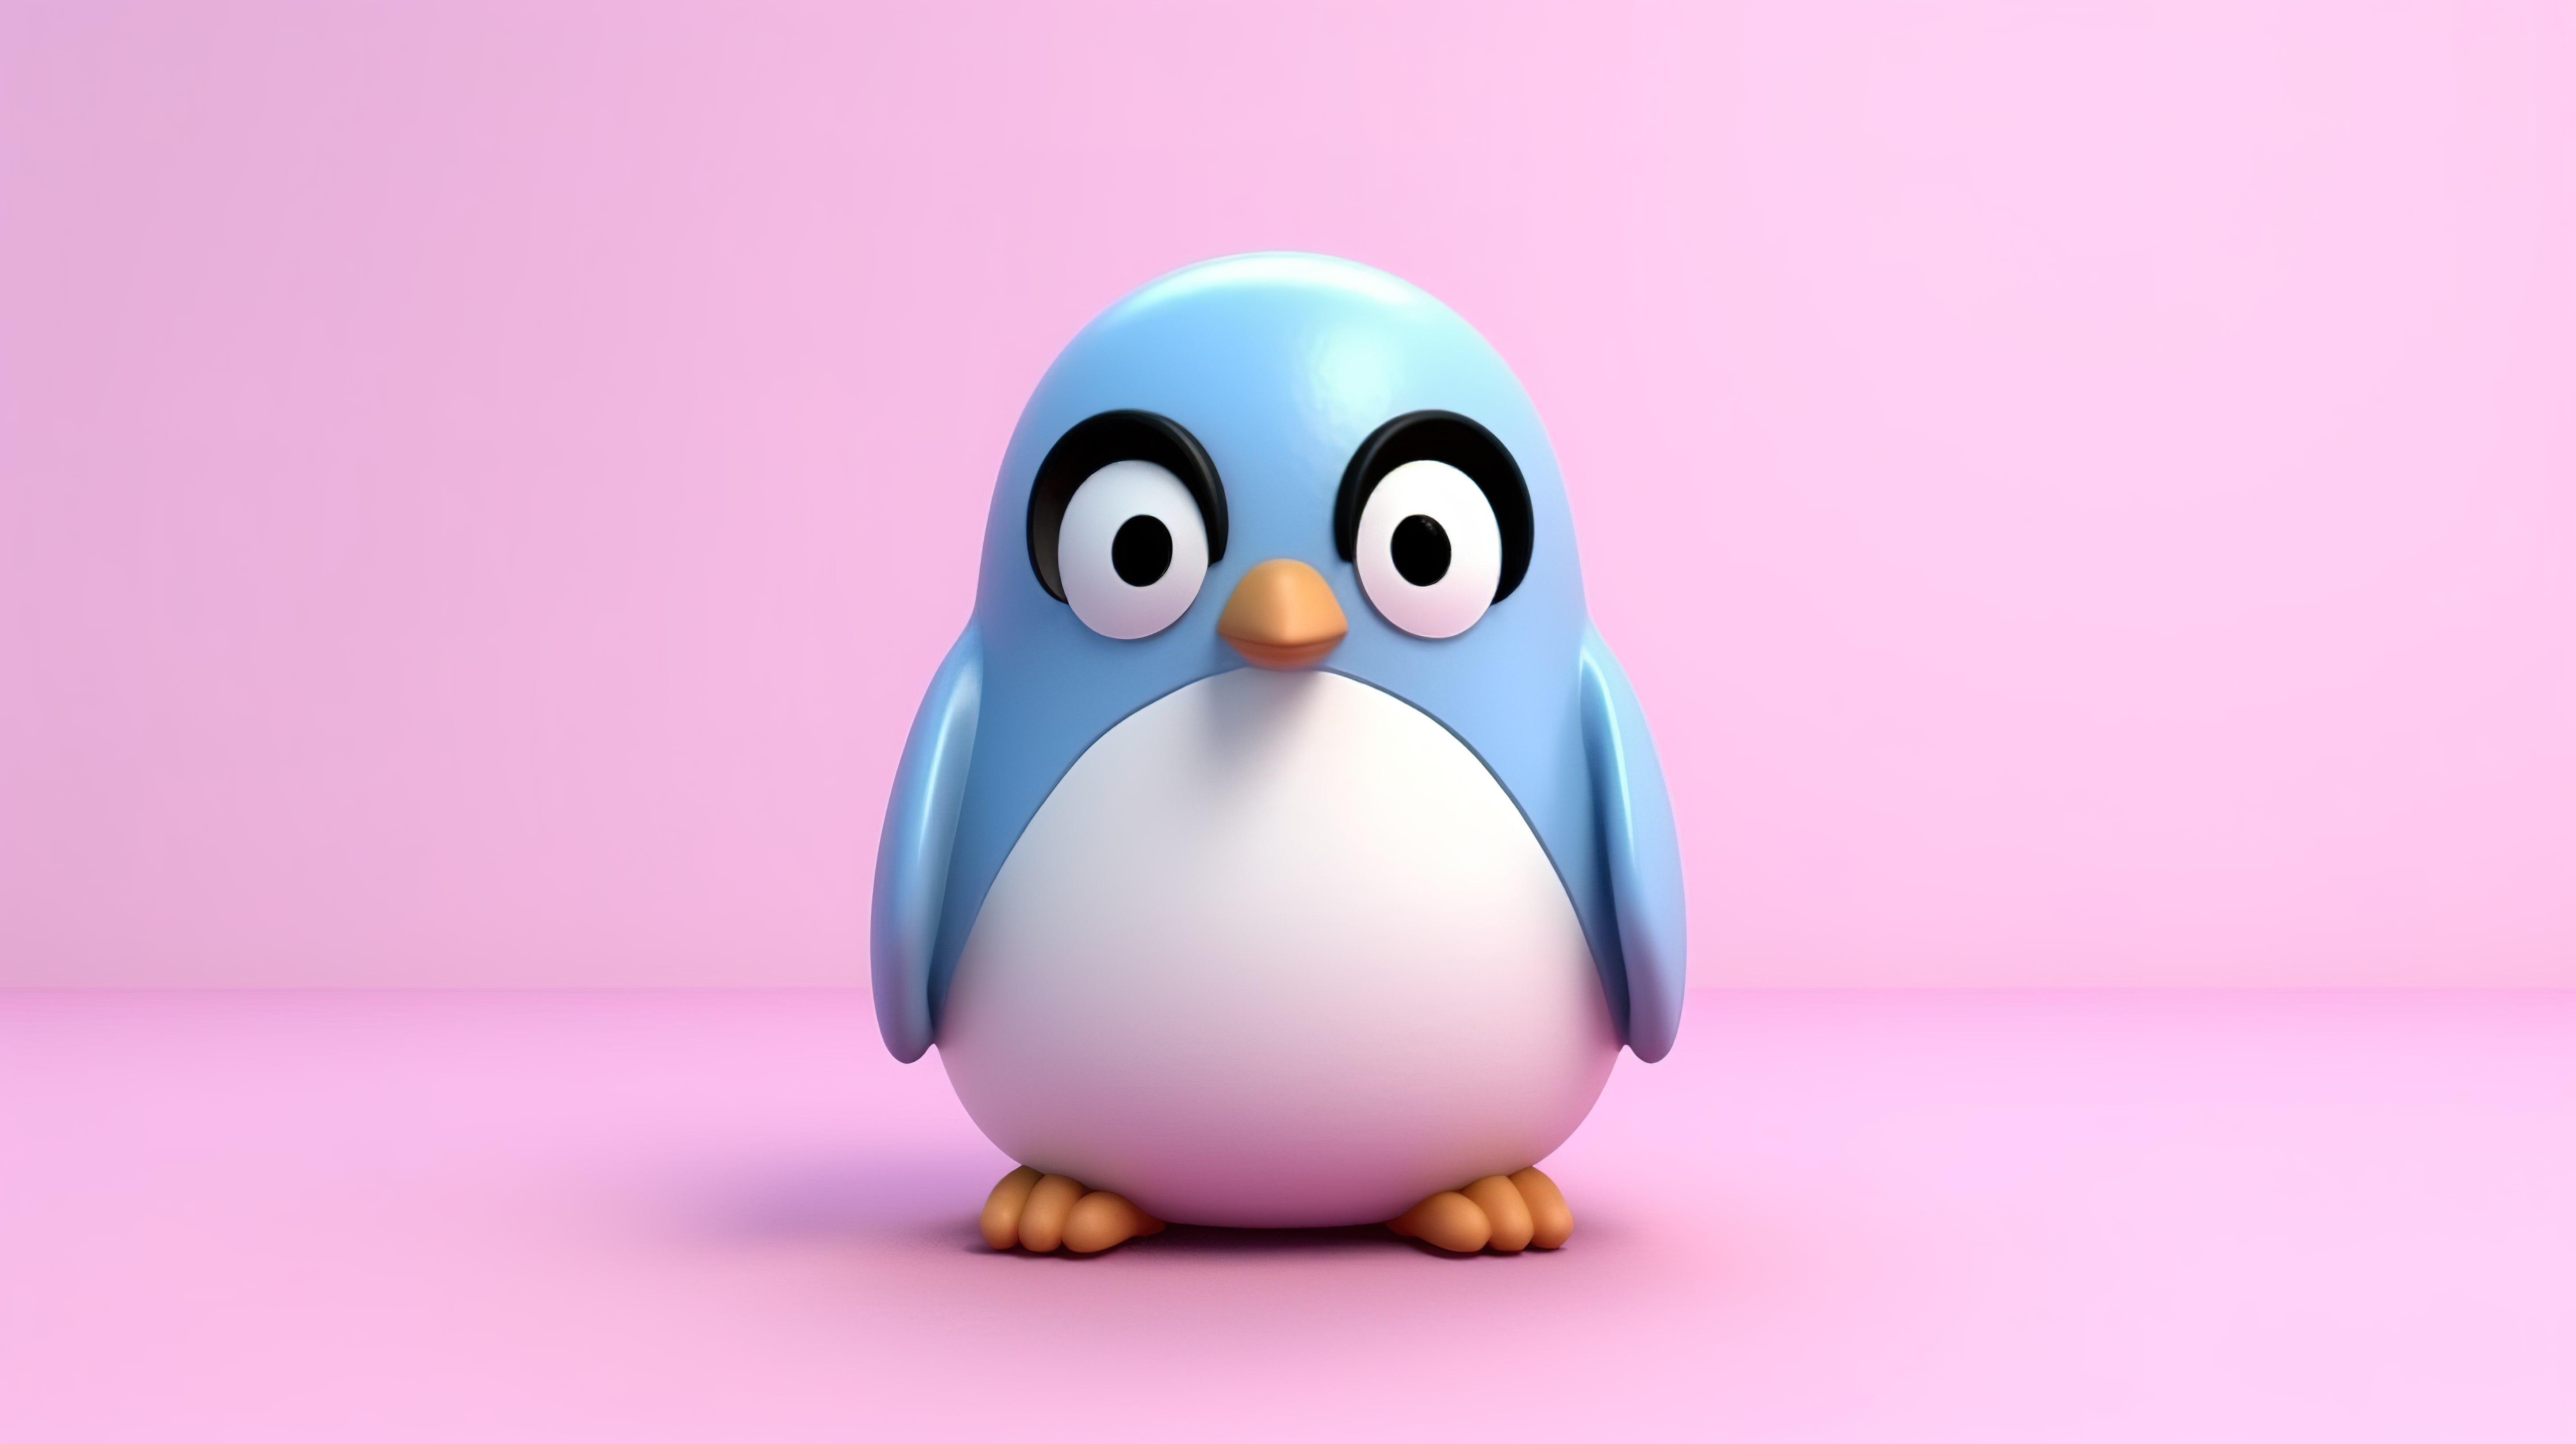 可爱的双色调橡皮泥或粘土企鹅玩具，蓝色和白色，放置在粉红色背景 3D 渲染上图片